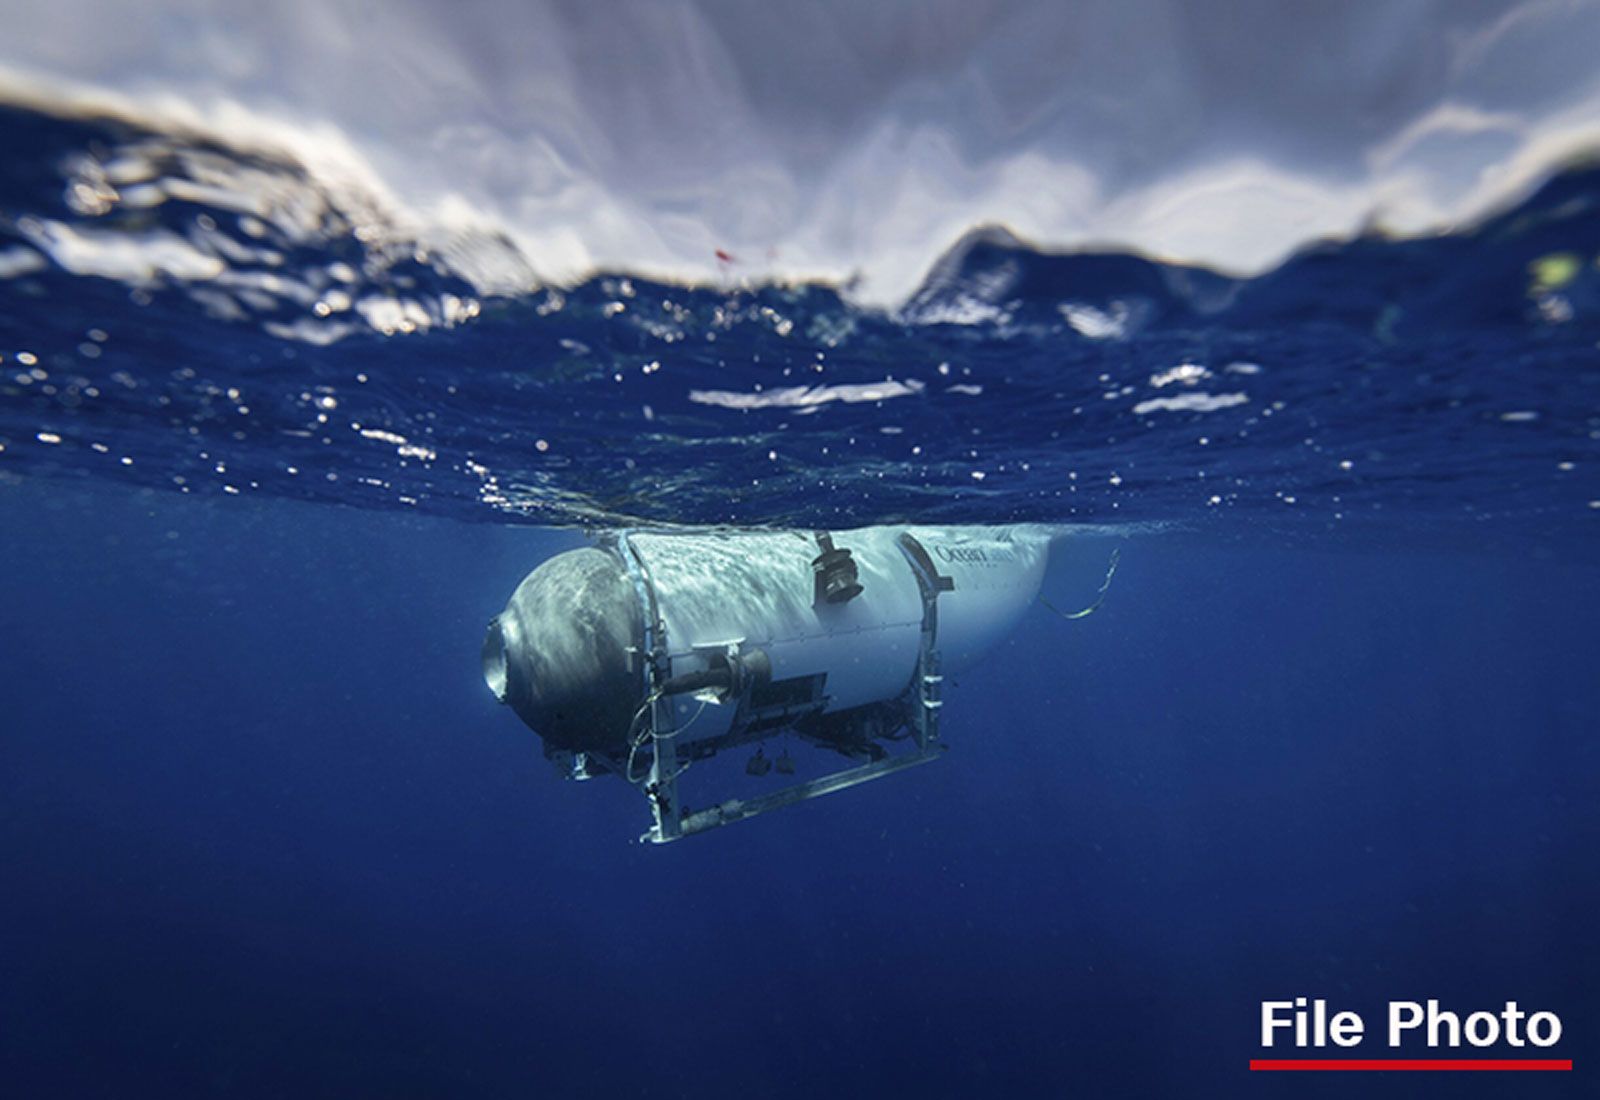 Titanic tourist submarine missing: Underwater noises detected